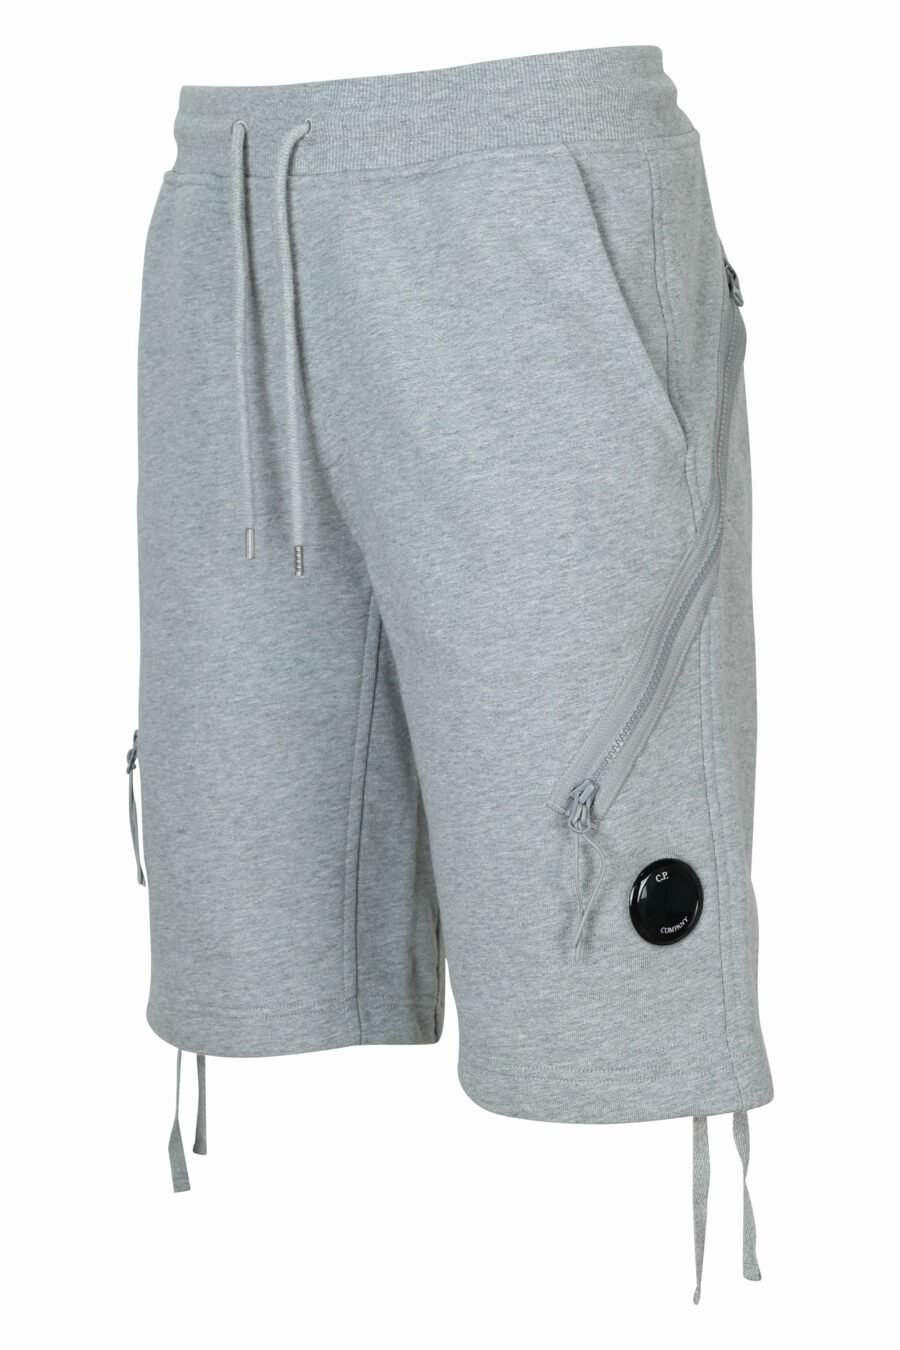 Pantalón de chándal midi gris con minilogo lente - 7620943733082 1